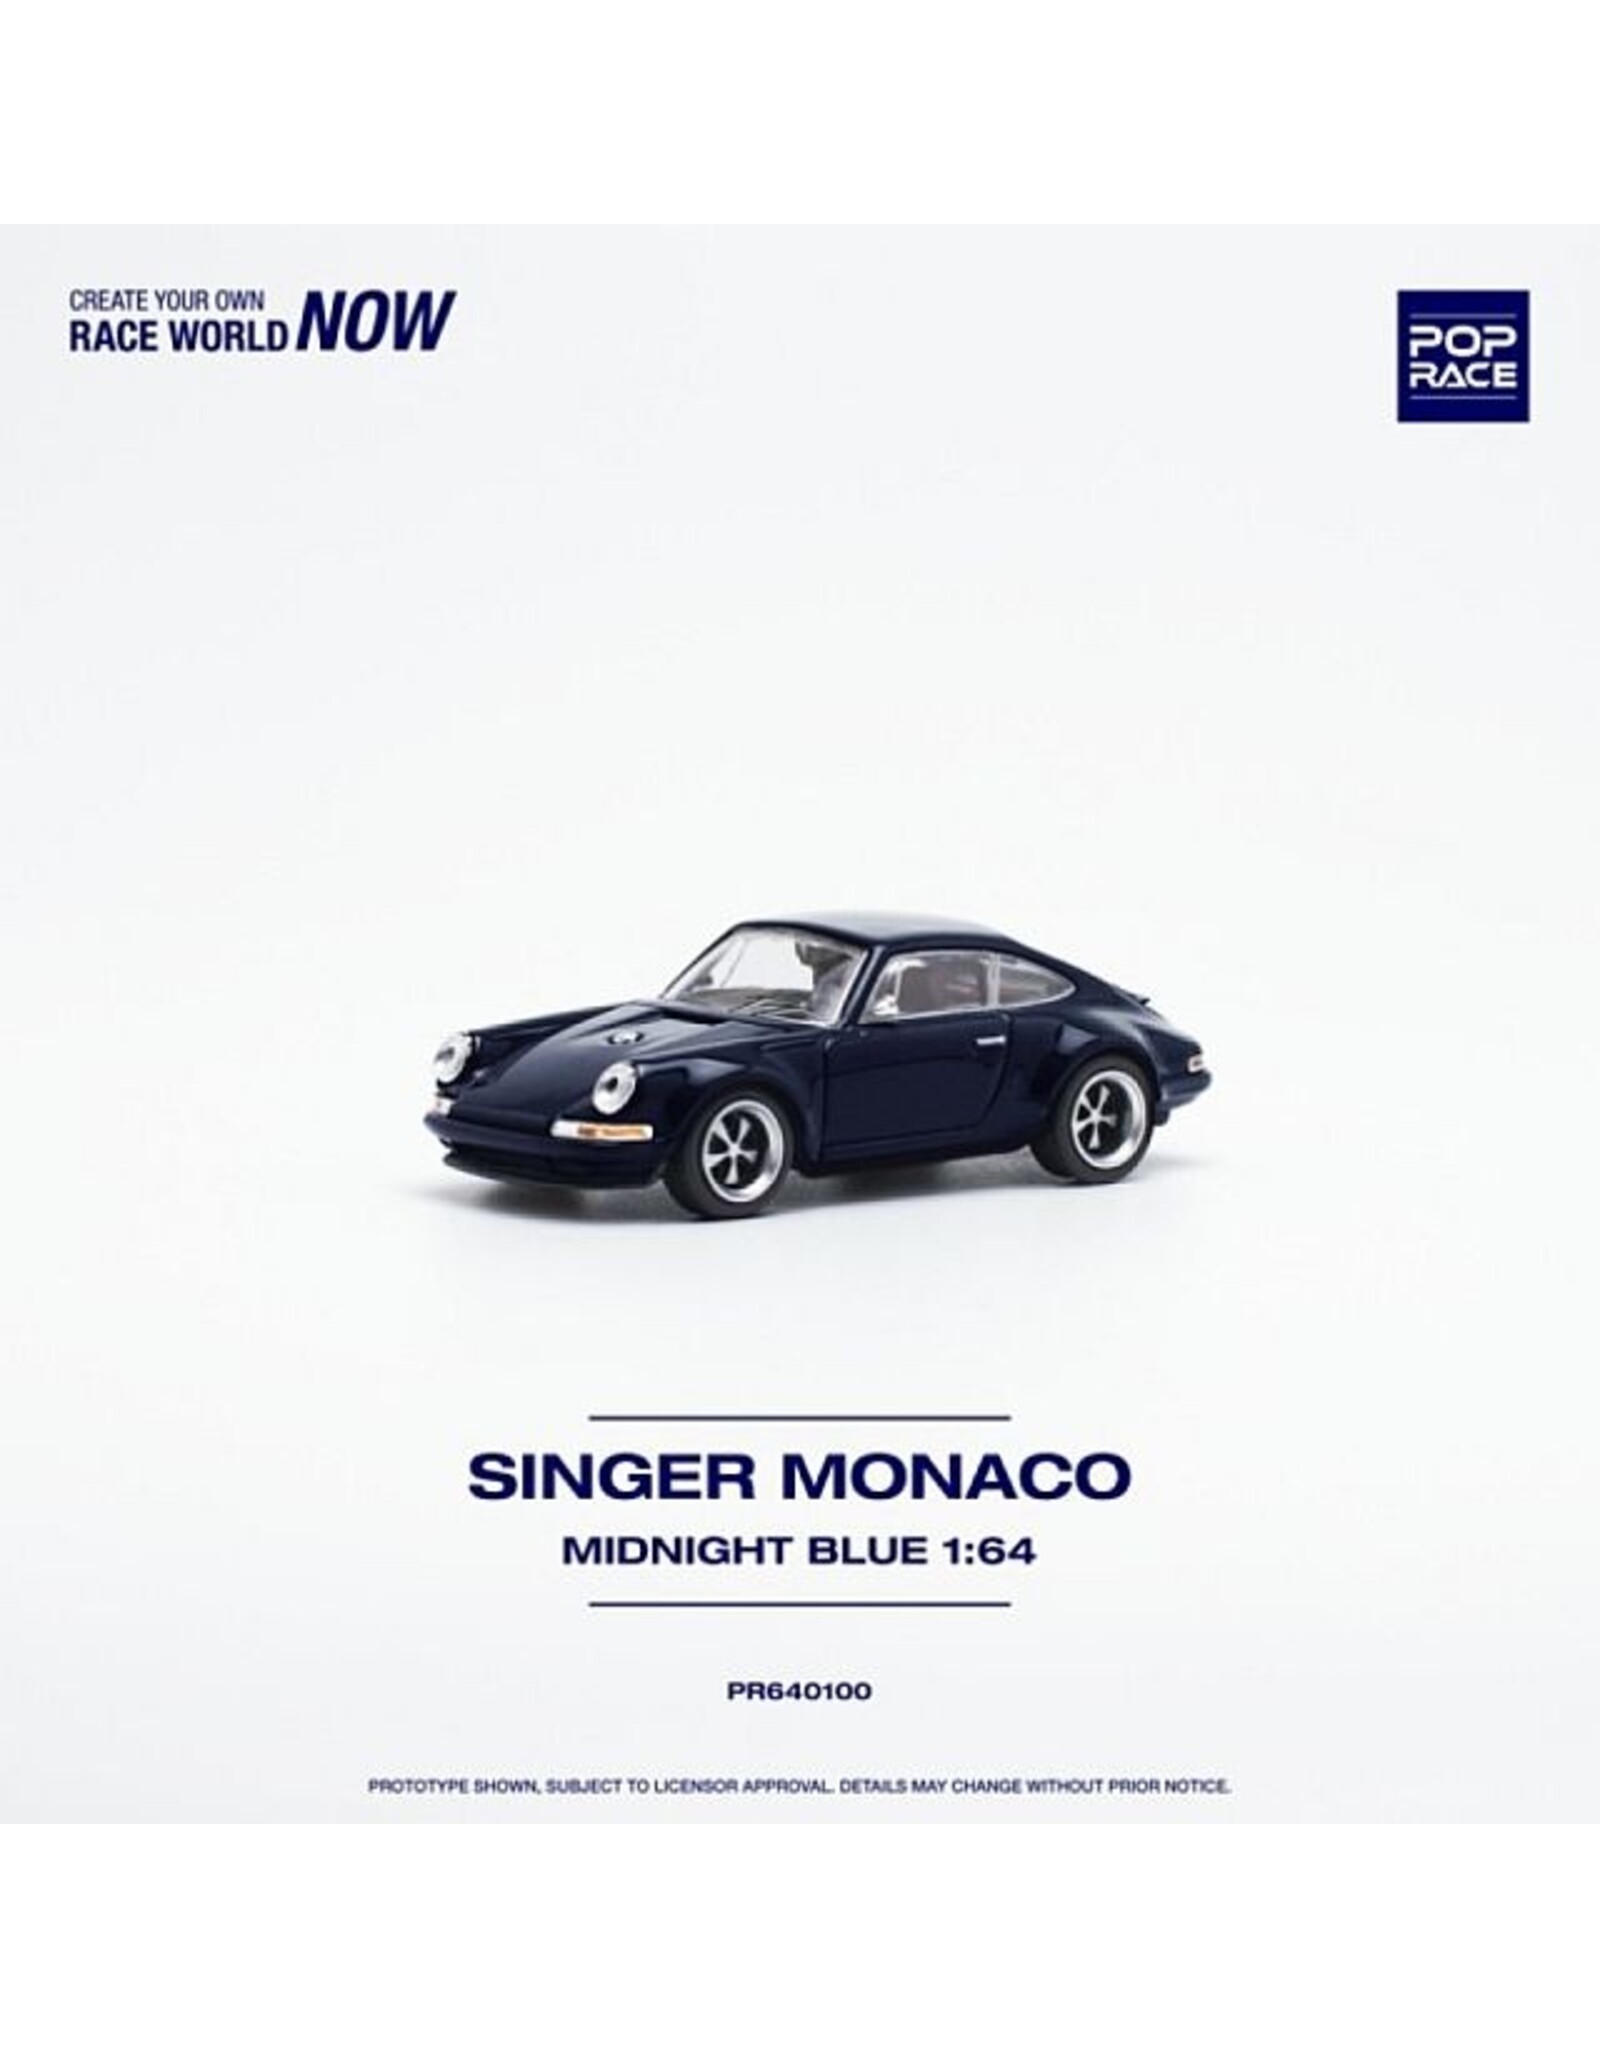 Singer Singer Monaco(midnight blue)